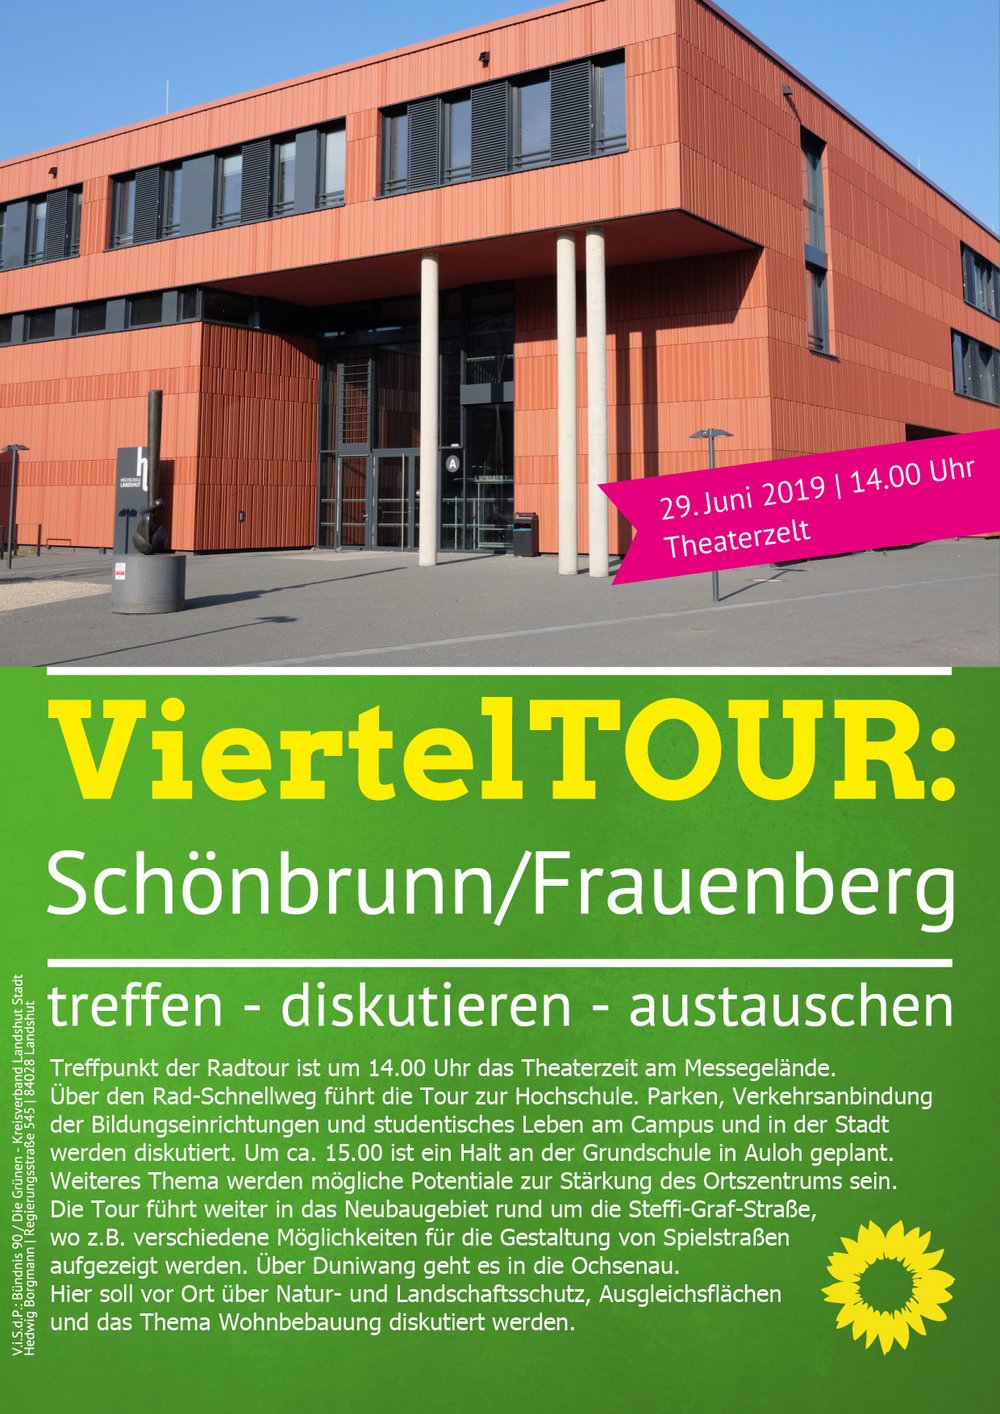 Bild des neuen Gebäudes der Hochschule Landshut mit roter Ziegelfassade und Veranstaltungstext